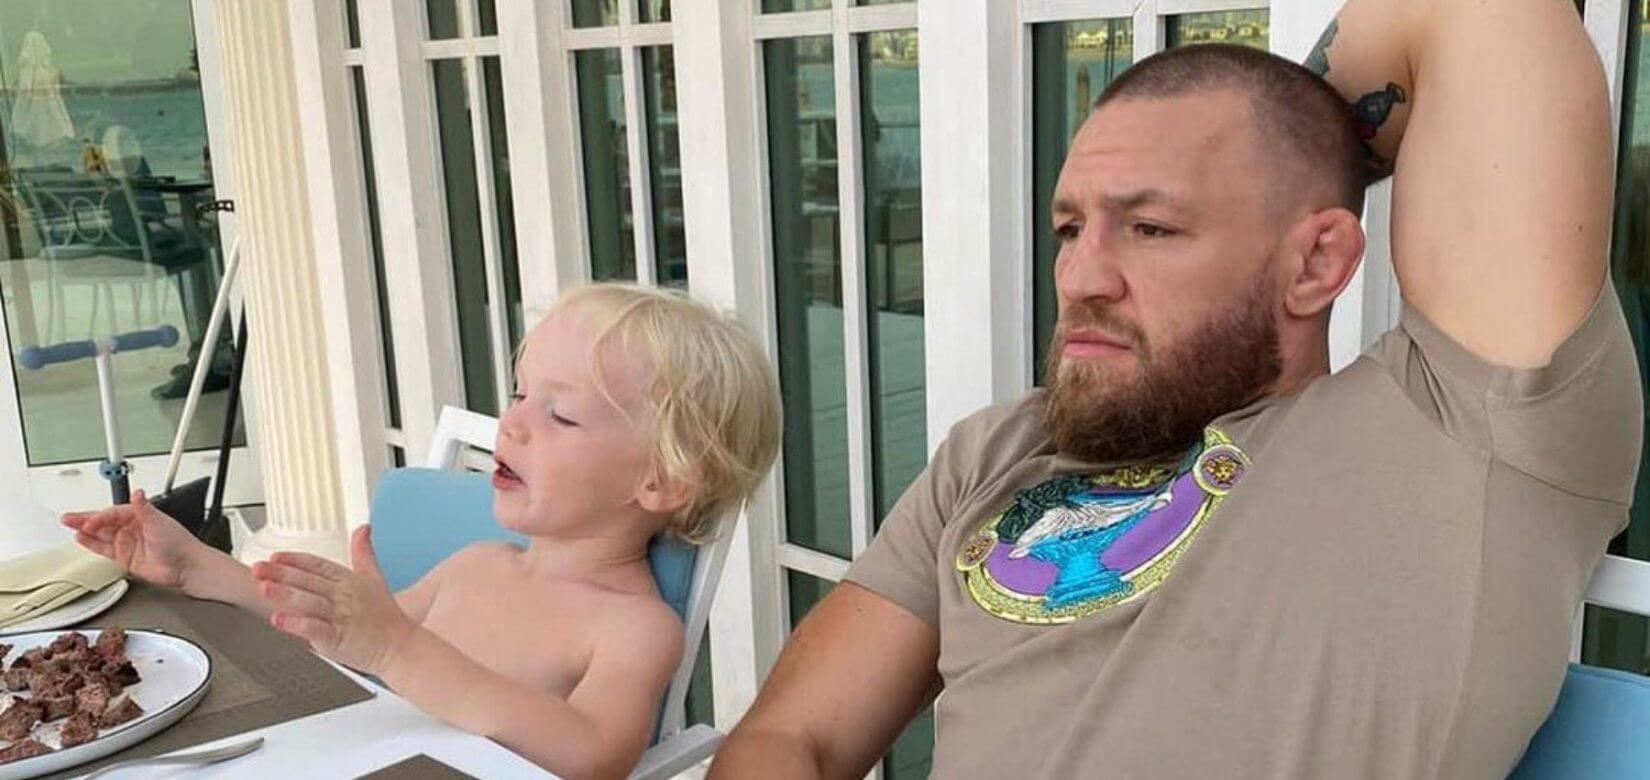 O Conor McGregor προκαλεί ξανά! - Παρότρυνε τον 3χρονο γιο του να χτυπήσει άλλο παιδάκι (video)